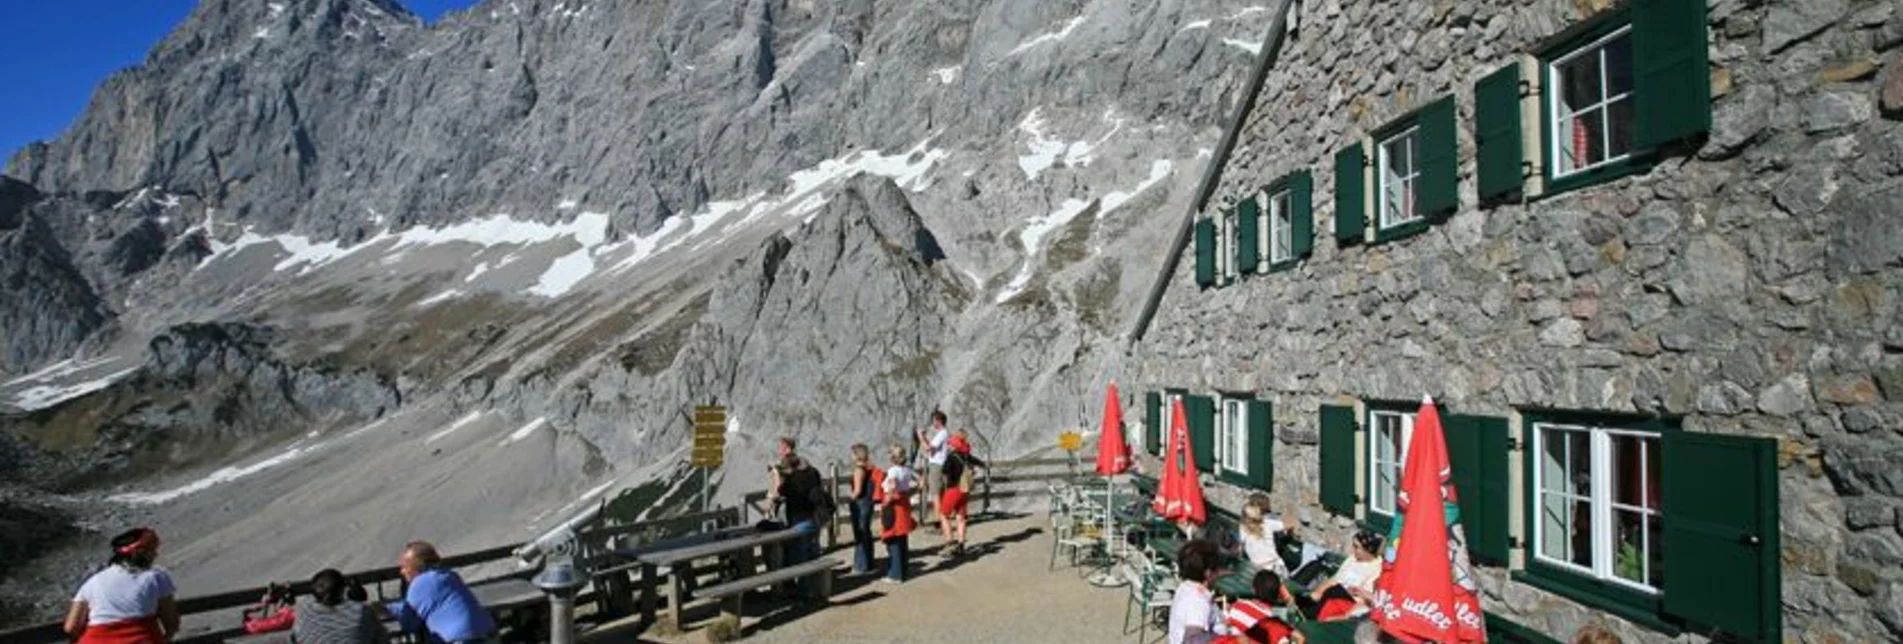 Klettersteig Anna Klettersteig - Touren-Impression #1 | © Tourismusverband Ramsau am Dachstein